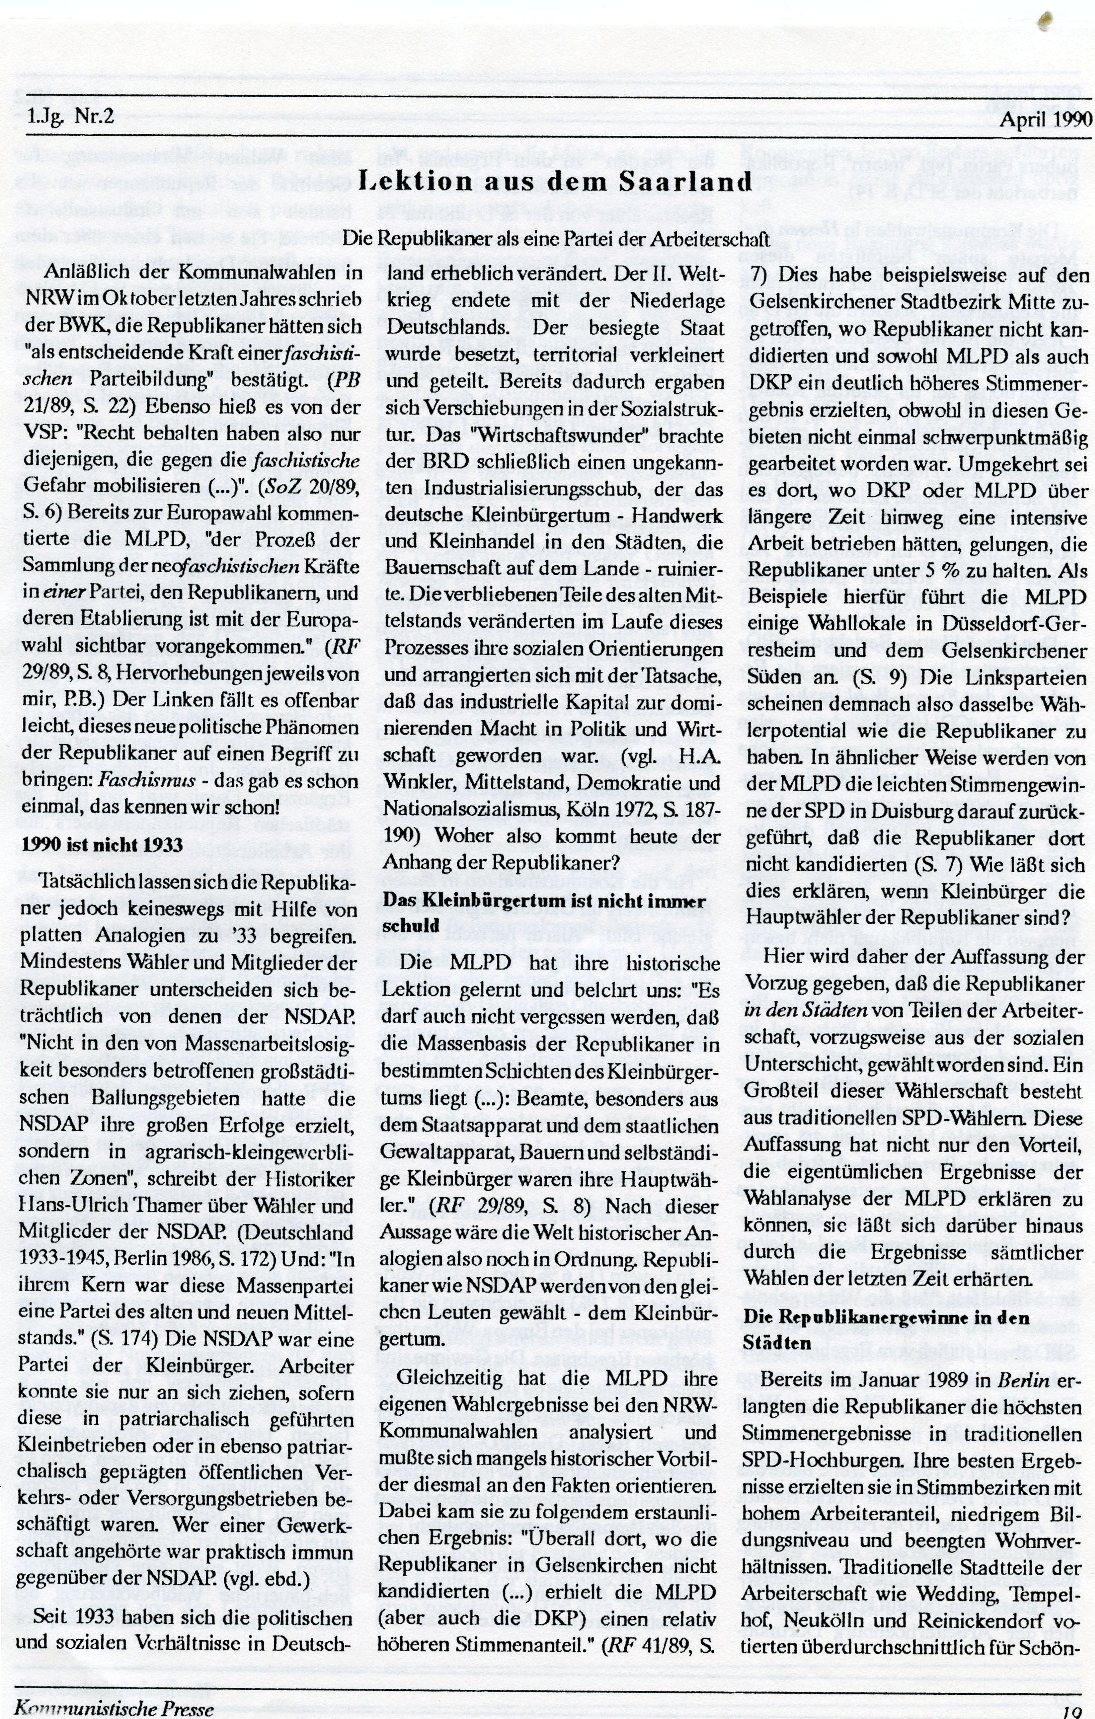 Gelsenkirchen_Kommunistische_Presse_1990_02_019